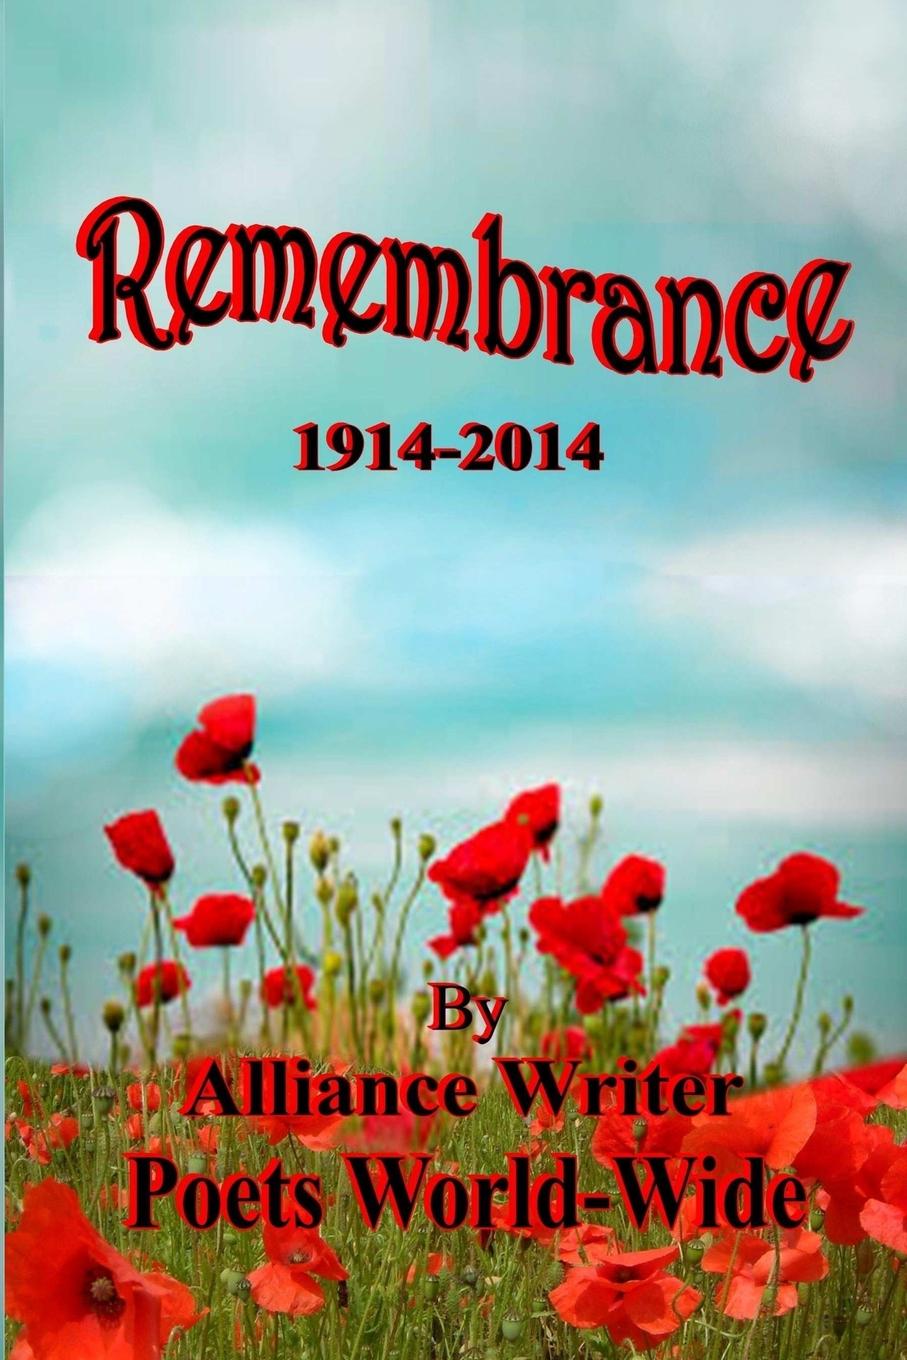 Alliance Poets, George L. Ellison Remembrance 1914-2014